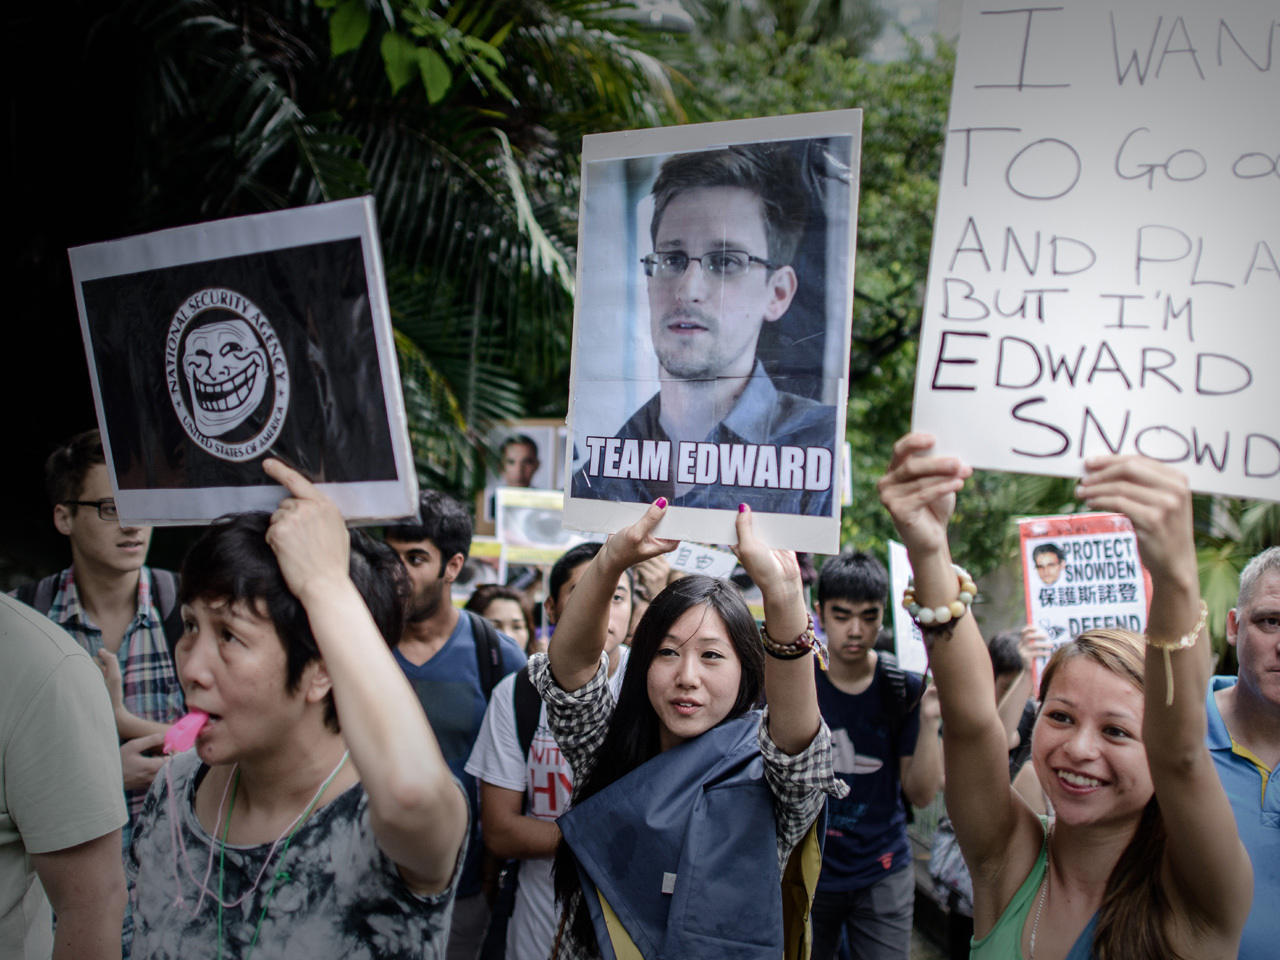 Hong Kong: Edward Snowden's welcoming refuge - CBS News